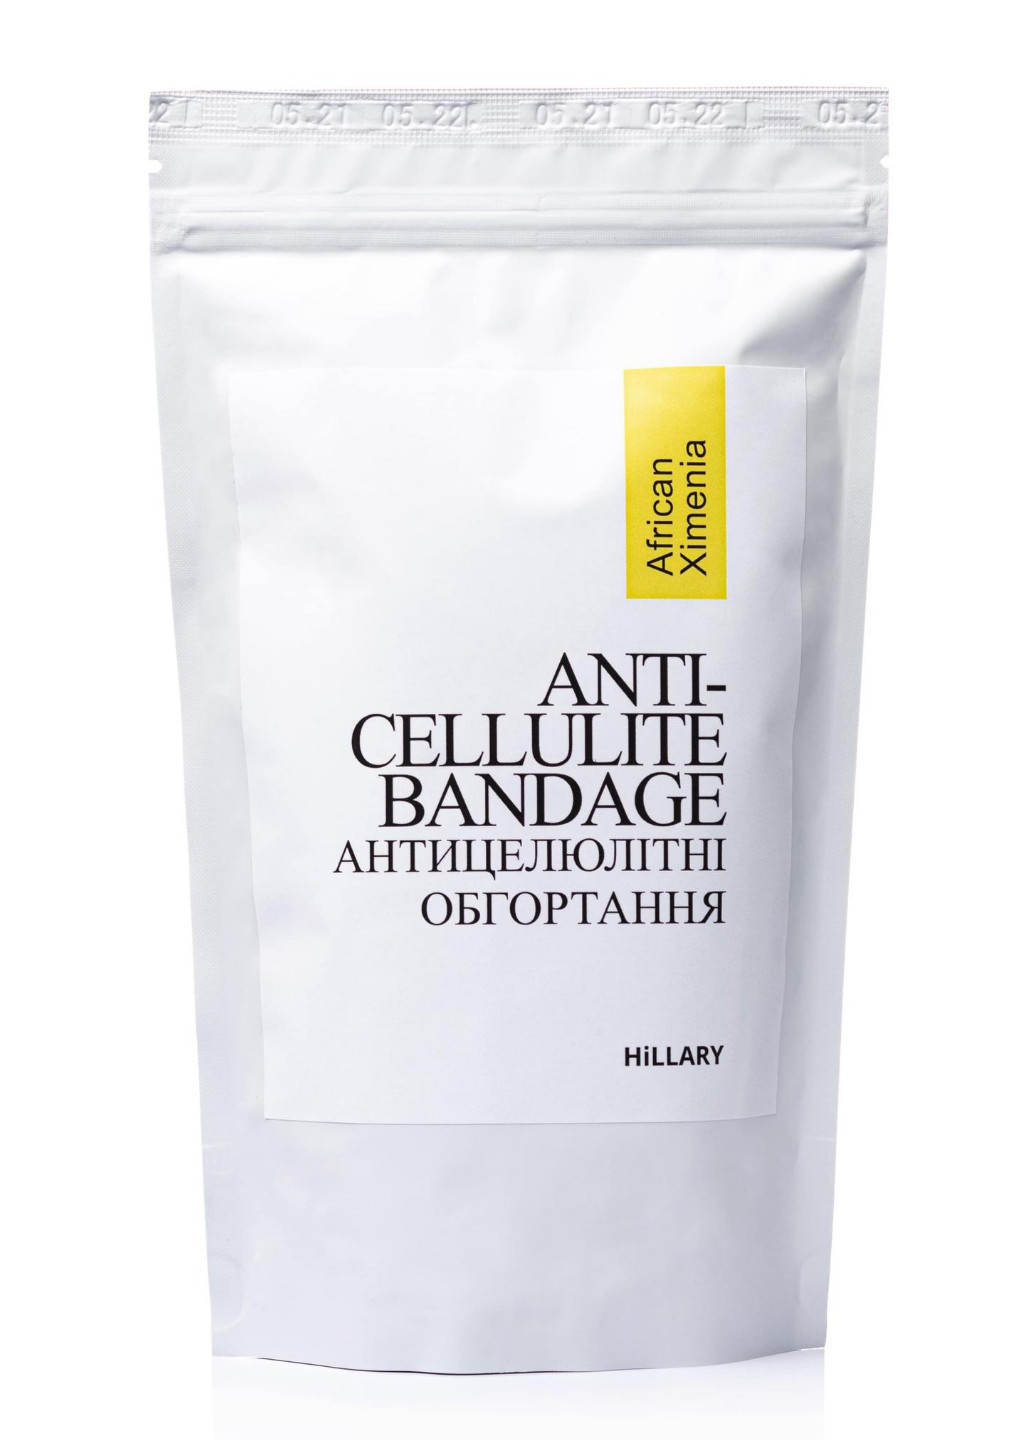 Комплекс Антицеллюлитных обертываний с маслом ксимении Anti-cellulite Bandage African Ximenia (10 уп.) Hillary (252999427)